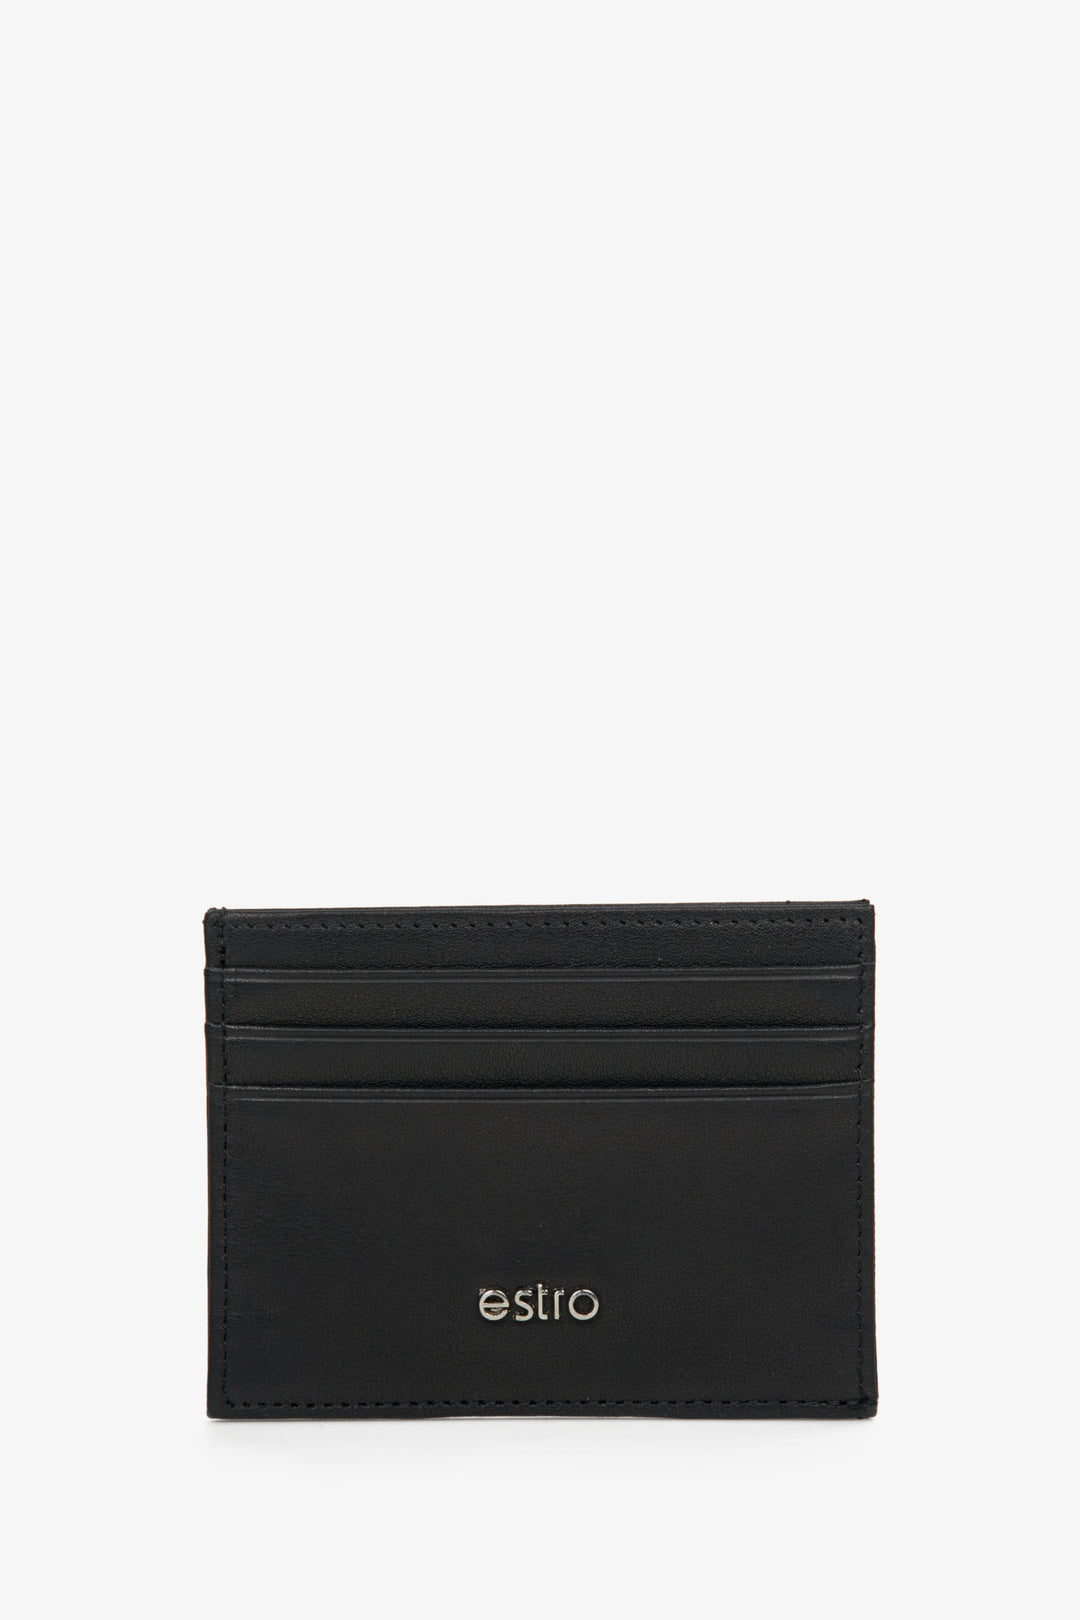 Men's Small Black Document Holder made of Genuine Leather Estro ER00114457.